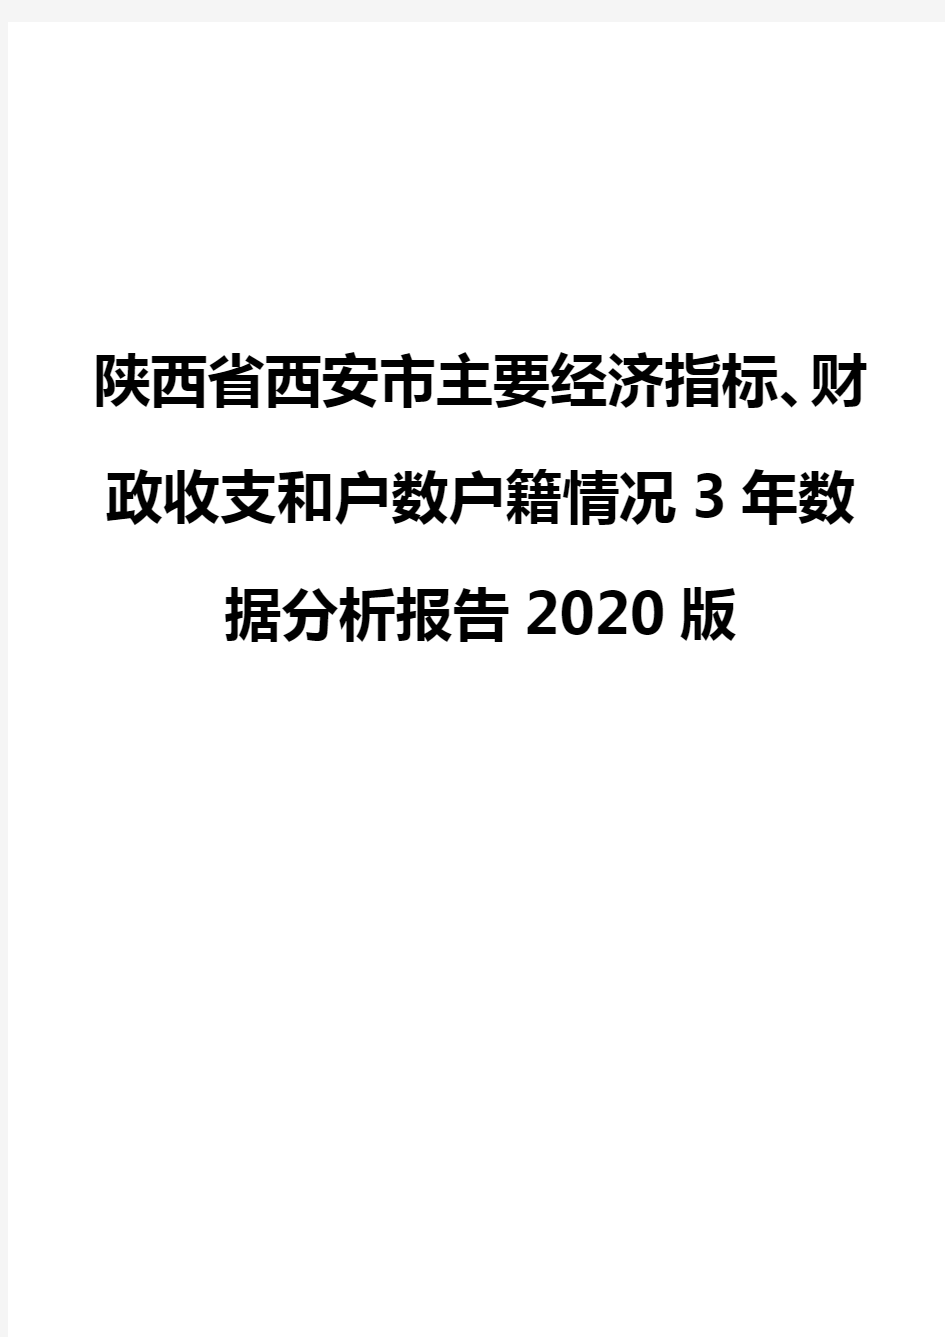 陕西省西安市主要经济指标、财政收支和户数户籍情况3年数据分析报告2020版